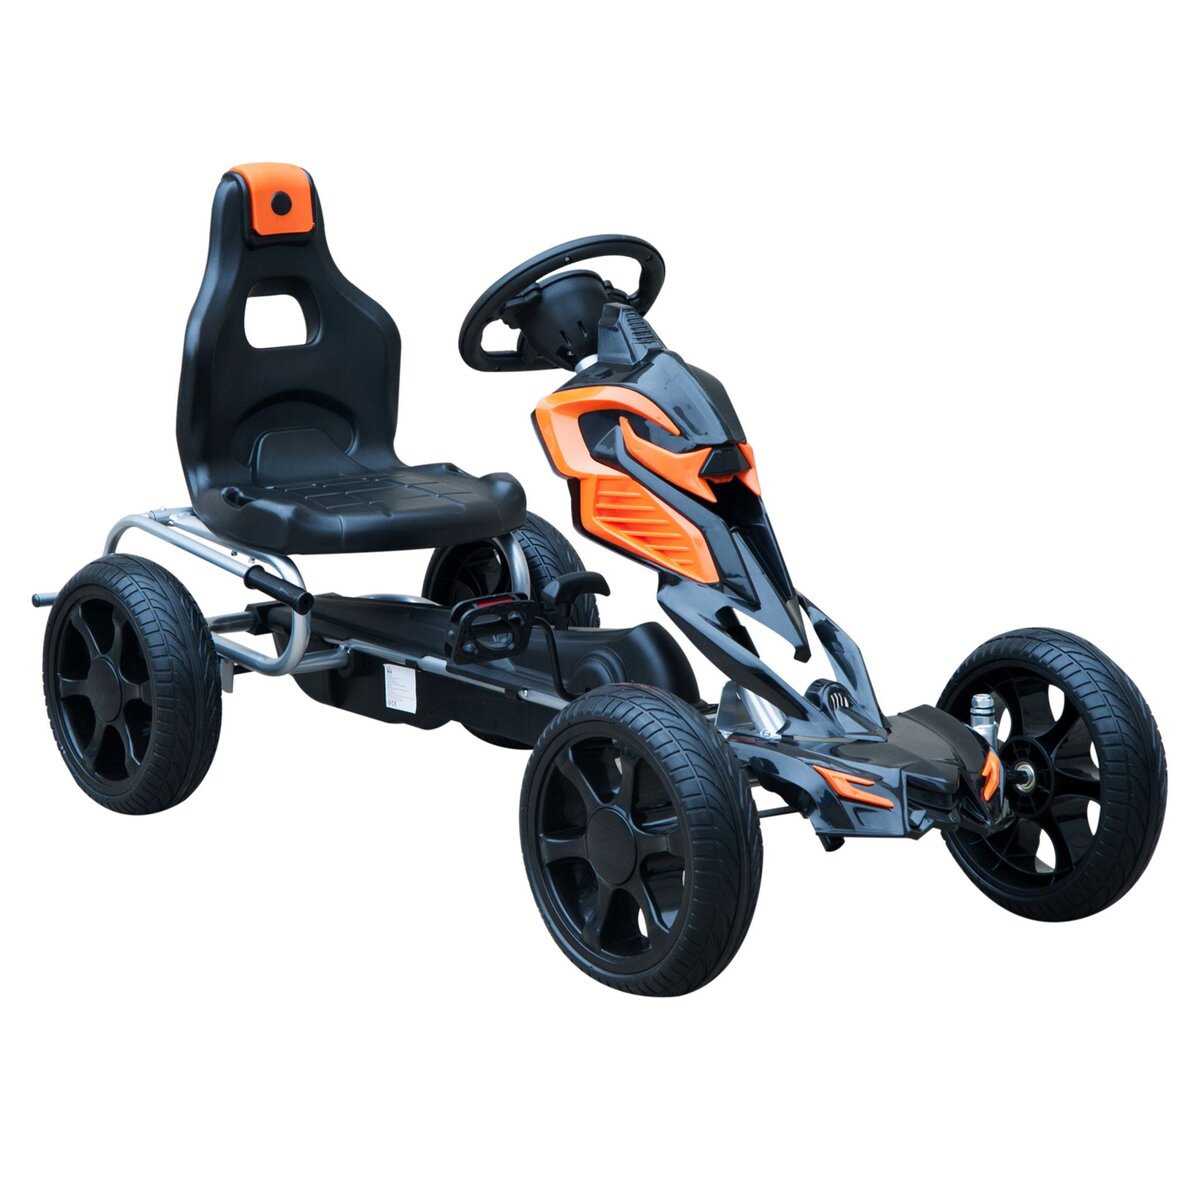 Kart à pédales go-kart avec siège réglable ergonomique et frein à